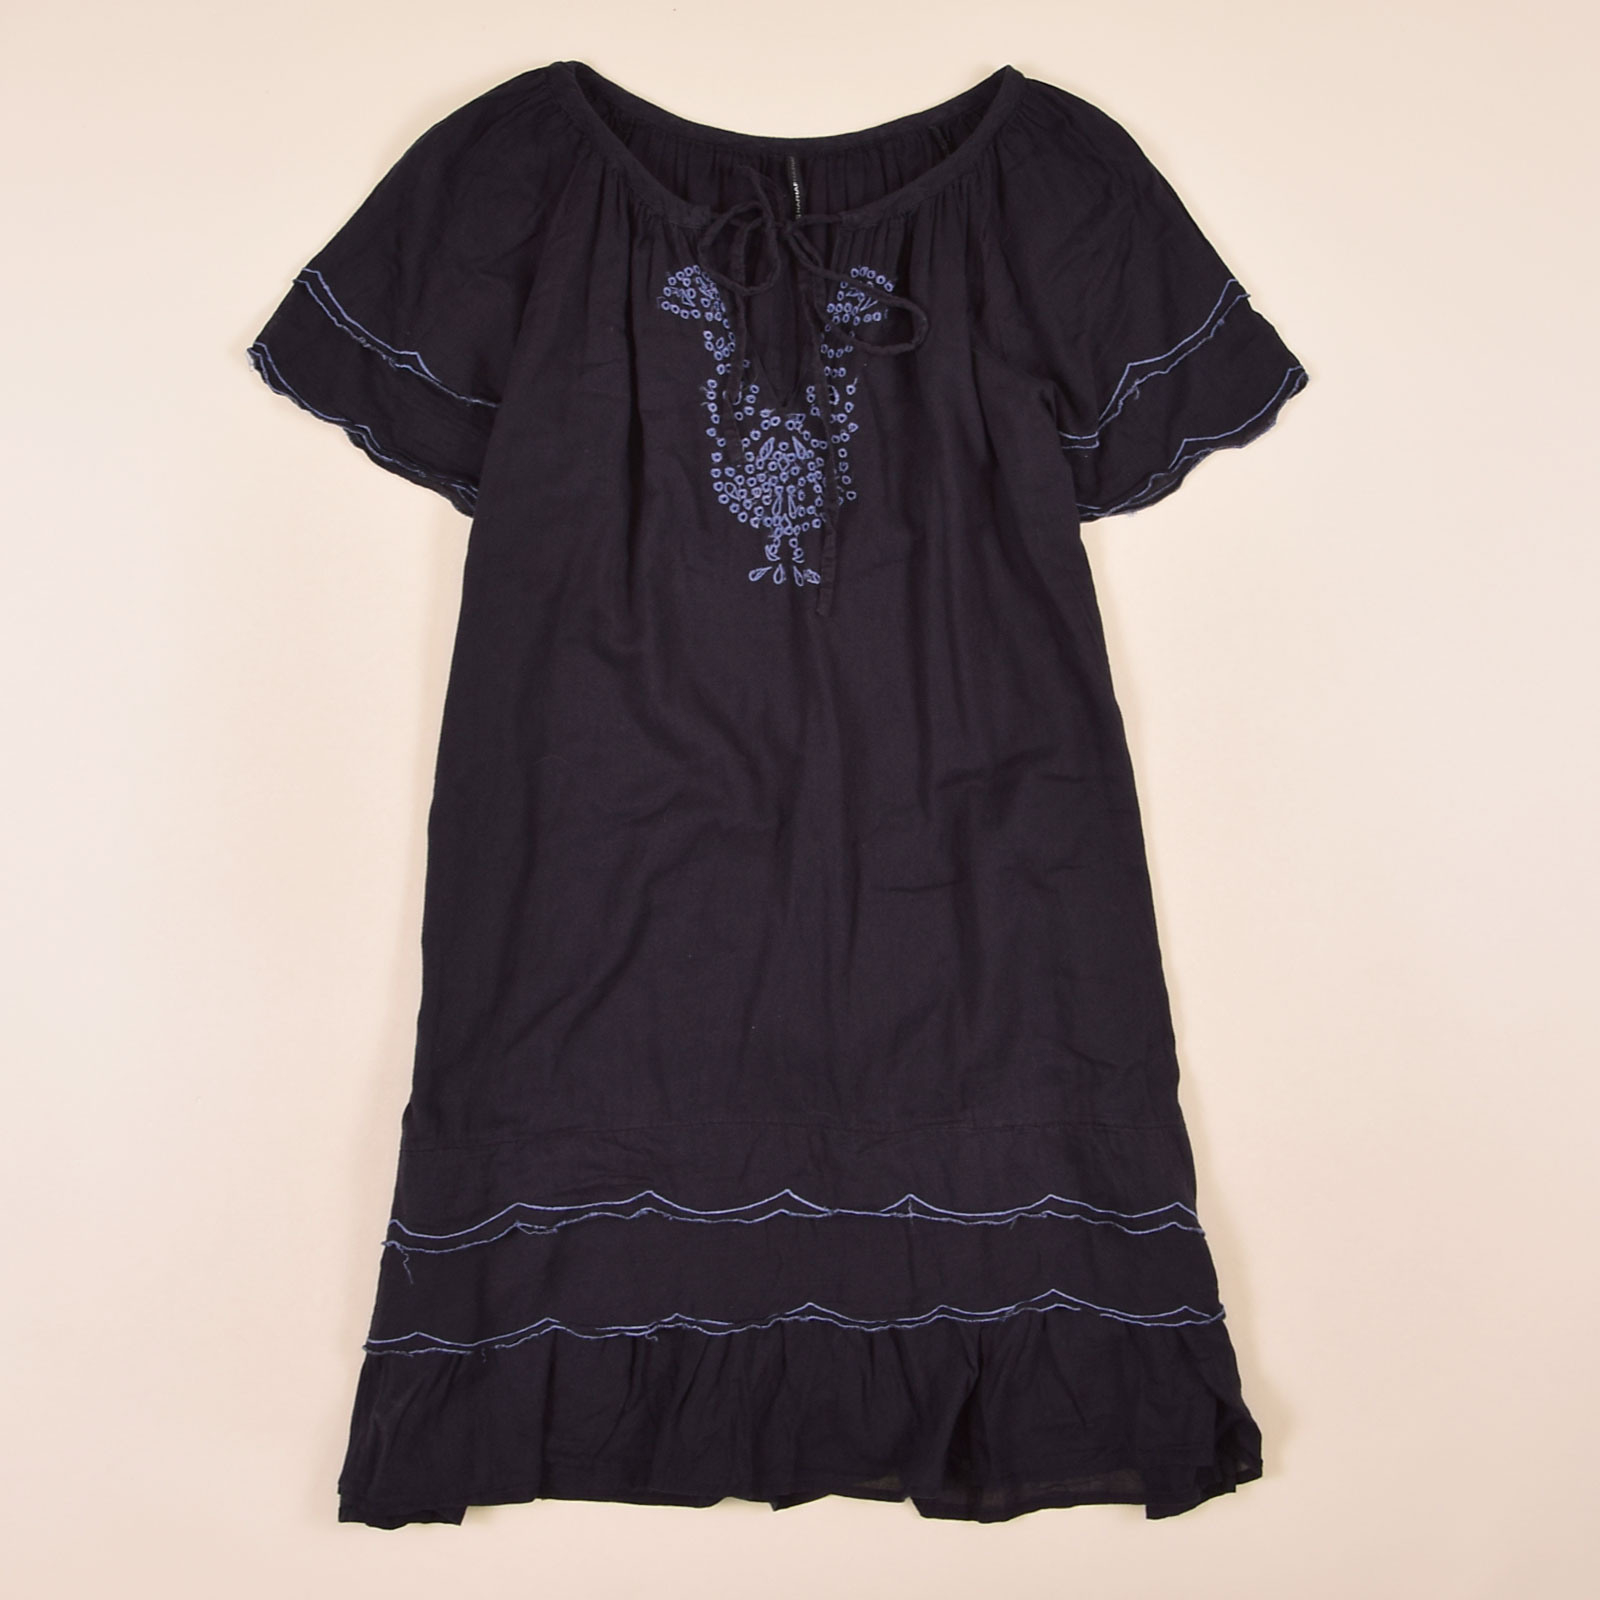 Naf Naf Damen Kleid Dress Gr40 Navy Blau 73916  Ebay